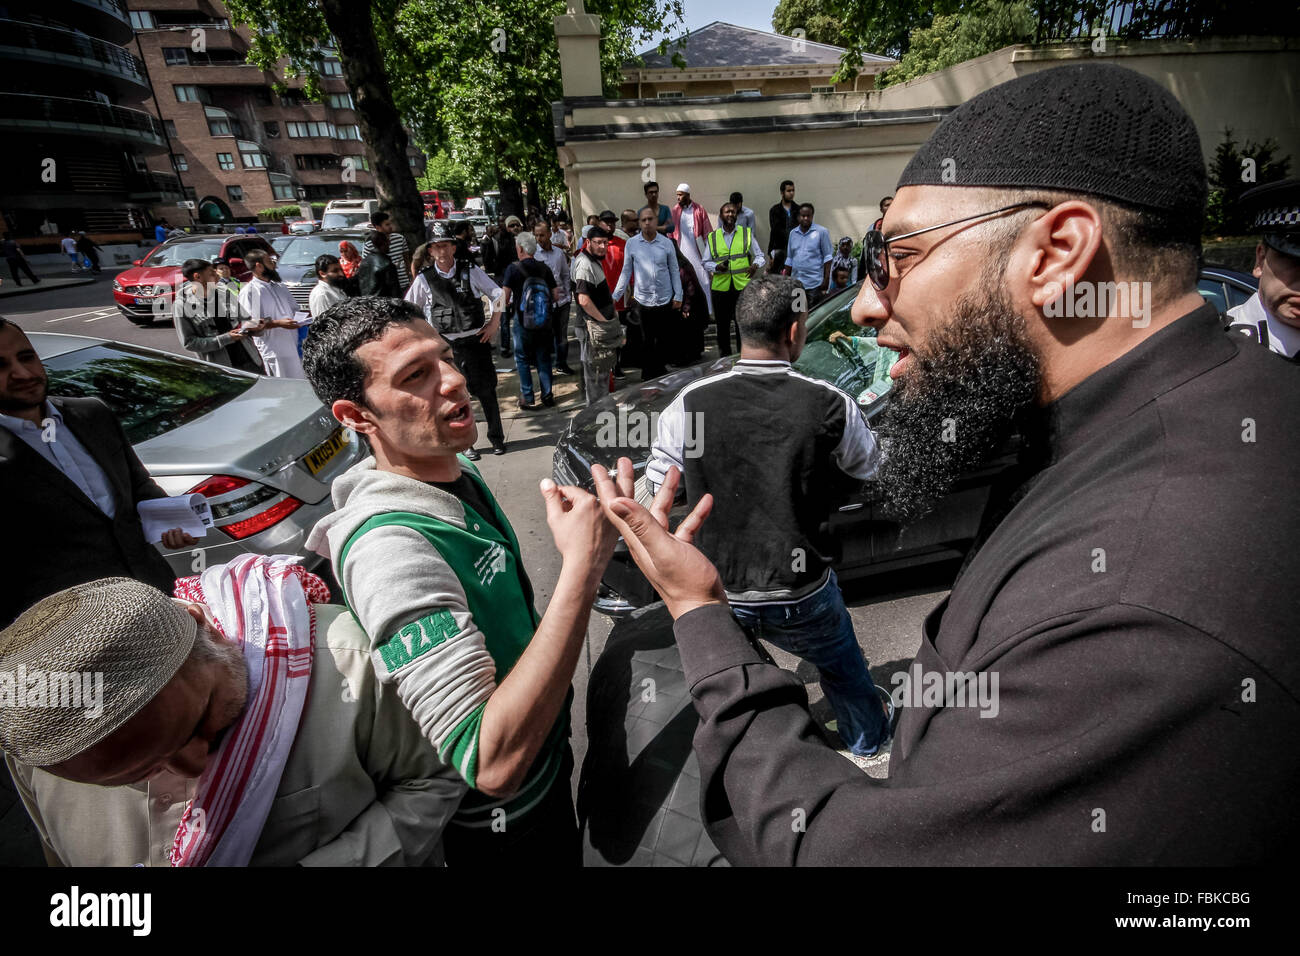 Datei-IMAGES: London, UK. 12. Juli 2013. Datei-Images von 07.12.2013: Mohammed Reza Haque (rechts), 35, bekannt als die "Riese" im Verdacht, den zweiten britischen islamischen Extremisten werden gedacht, um unter einem Team der Henker, die tot fünf "Spione" in Syrien Anfang dieses Jahres erschossen. Sehen Sie hier in 2013 diskutieren außerhalb Regents Park Moschee während eines islamistischen Protest organisiert durch radikale Kleriker Anjem Choudary Credit: Guy Corbishley/Alamy Live News Stockfoto